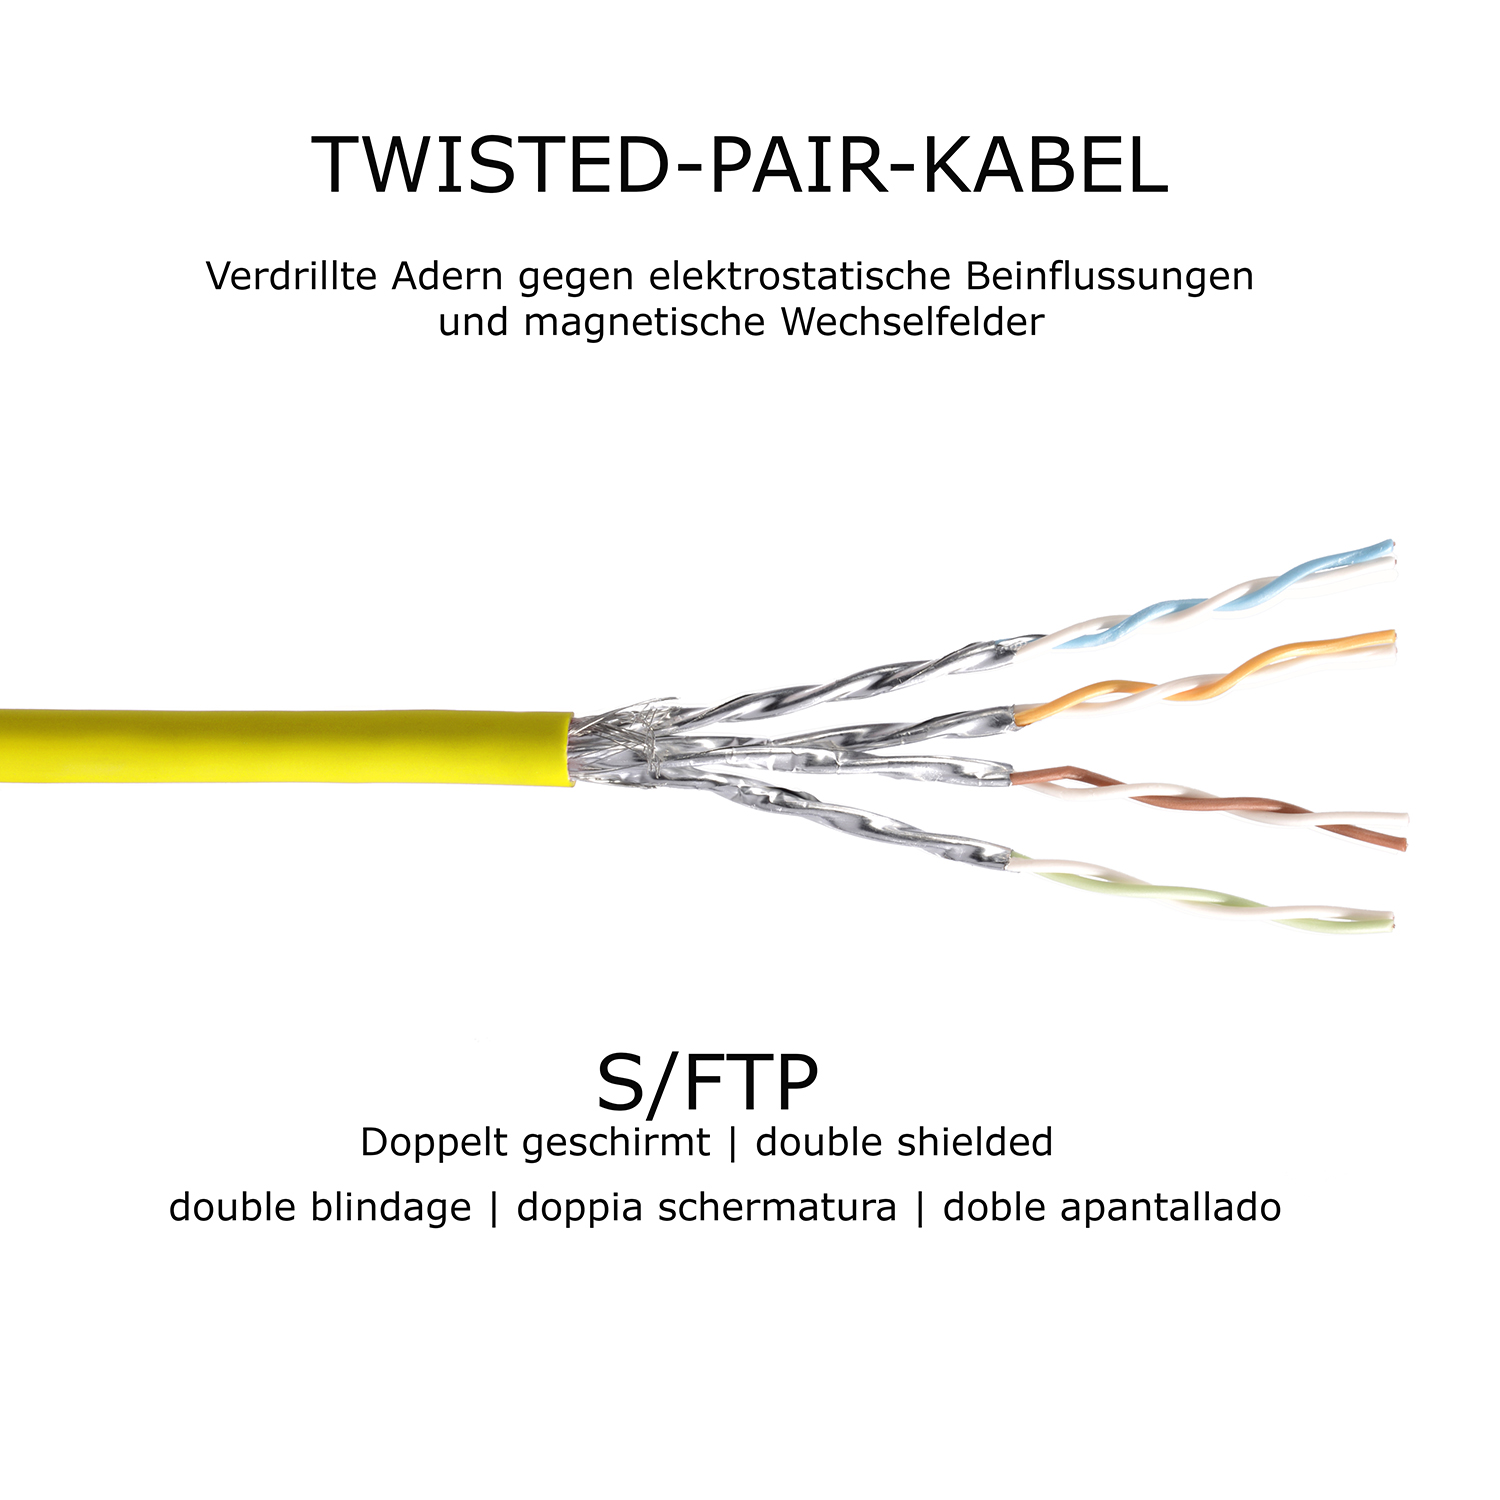 TPFNET 1,5m Patchkabel S/FTP 1,5 Netzwerkkabel, 1000Mbit, Netzwerkkabel m gelb, 